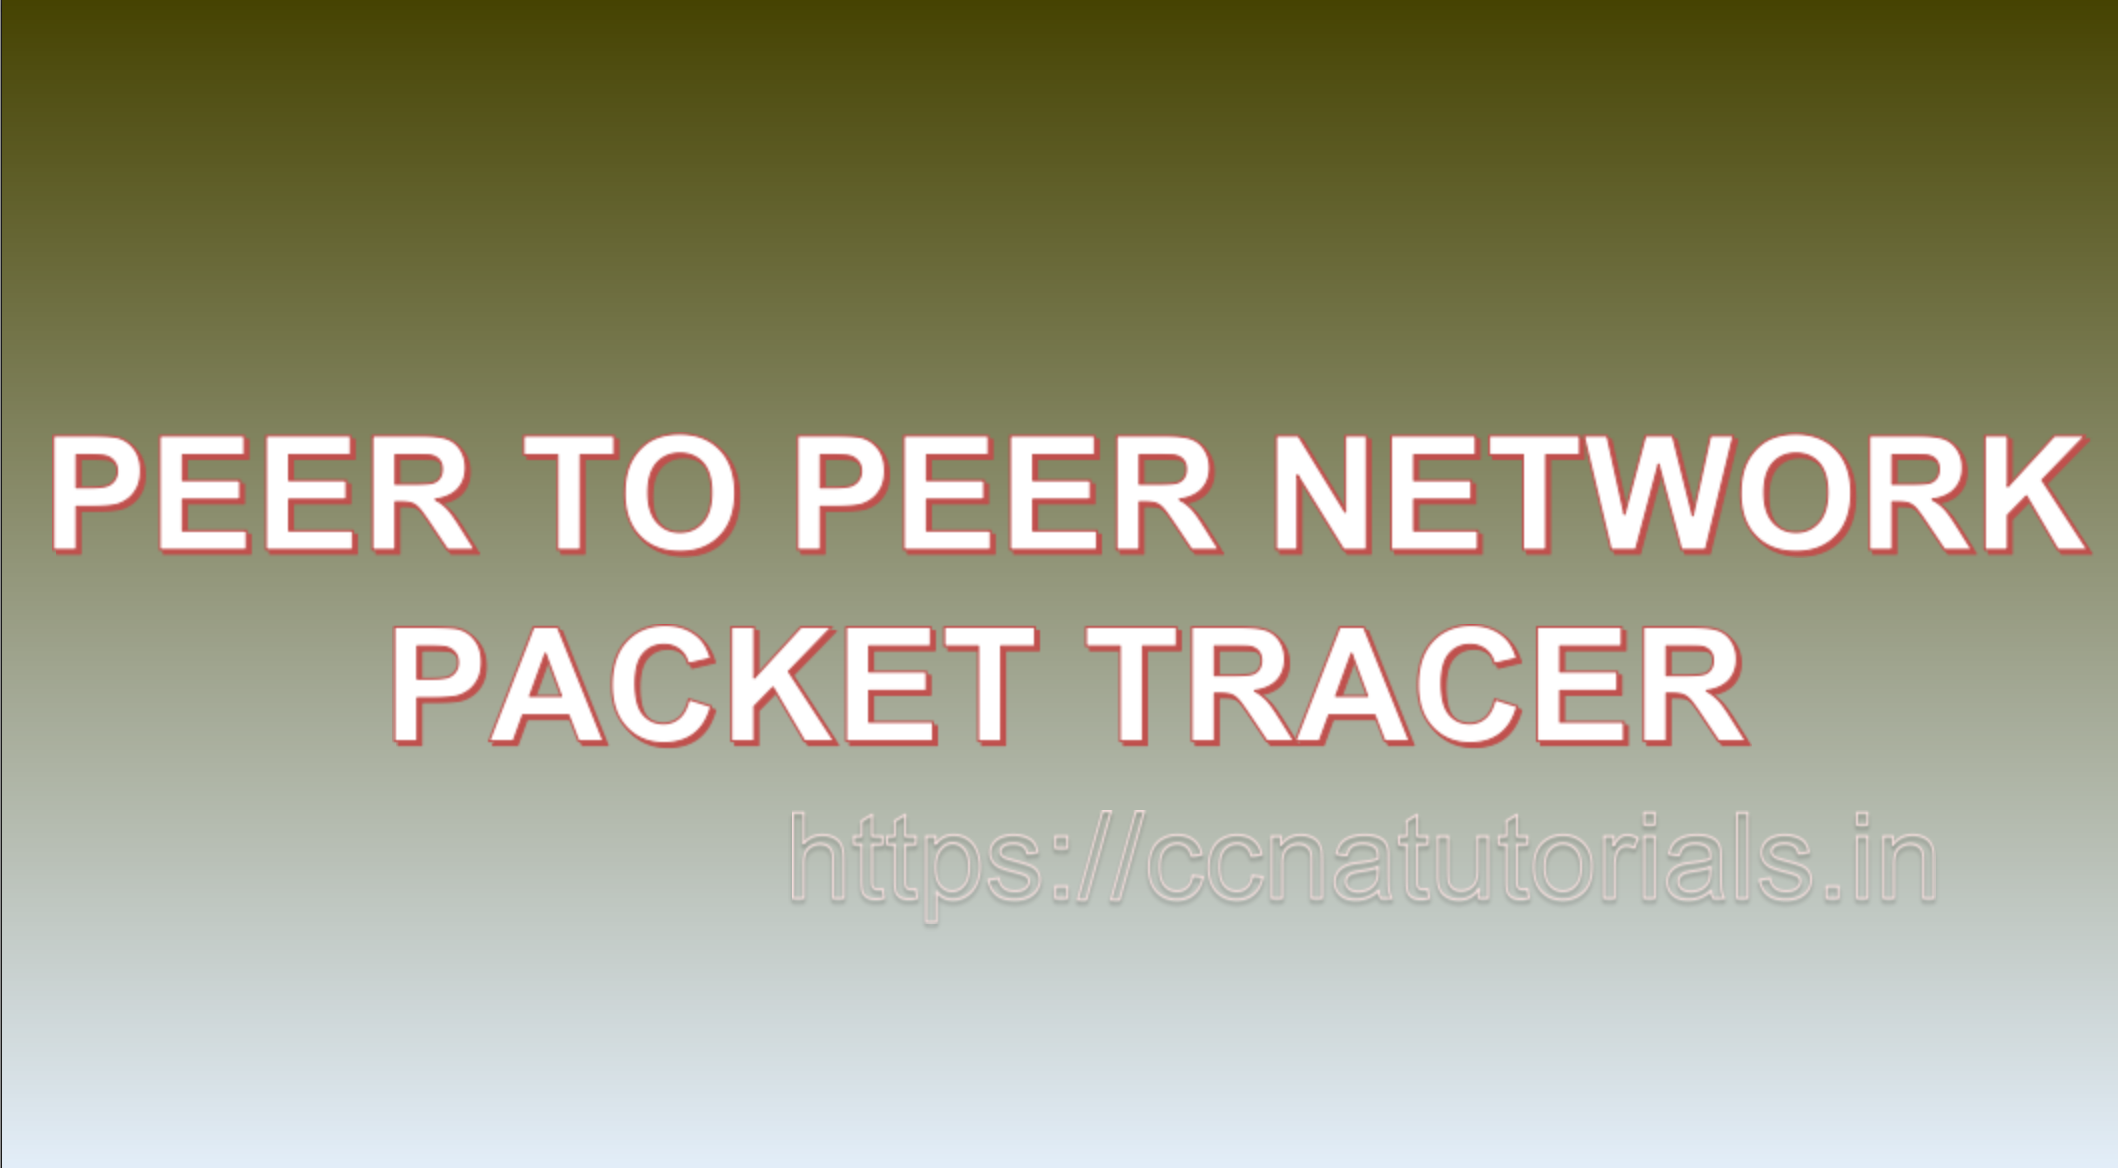 peer to peer network, packet tracer, ccna tutorial